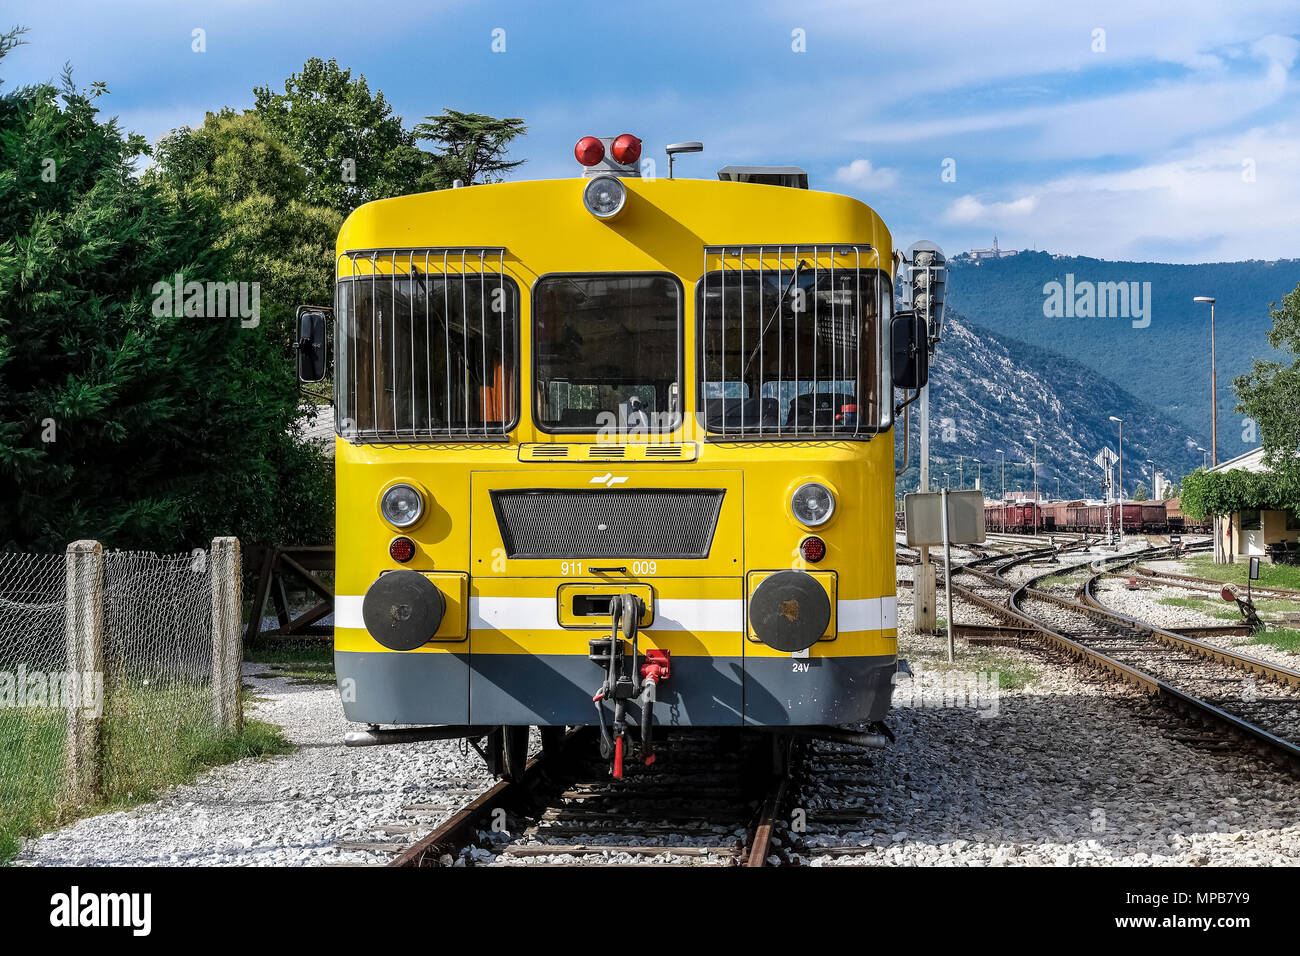 Macchine per la costruzione di ferrovie, una draisina gialla di manutenzione catenaria su un binario aperto, appena fuori dalla stazione ferroviaria di Nova Gorica, Slovenia, UE Foto Stock